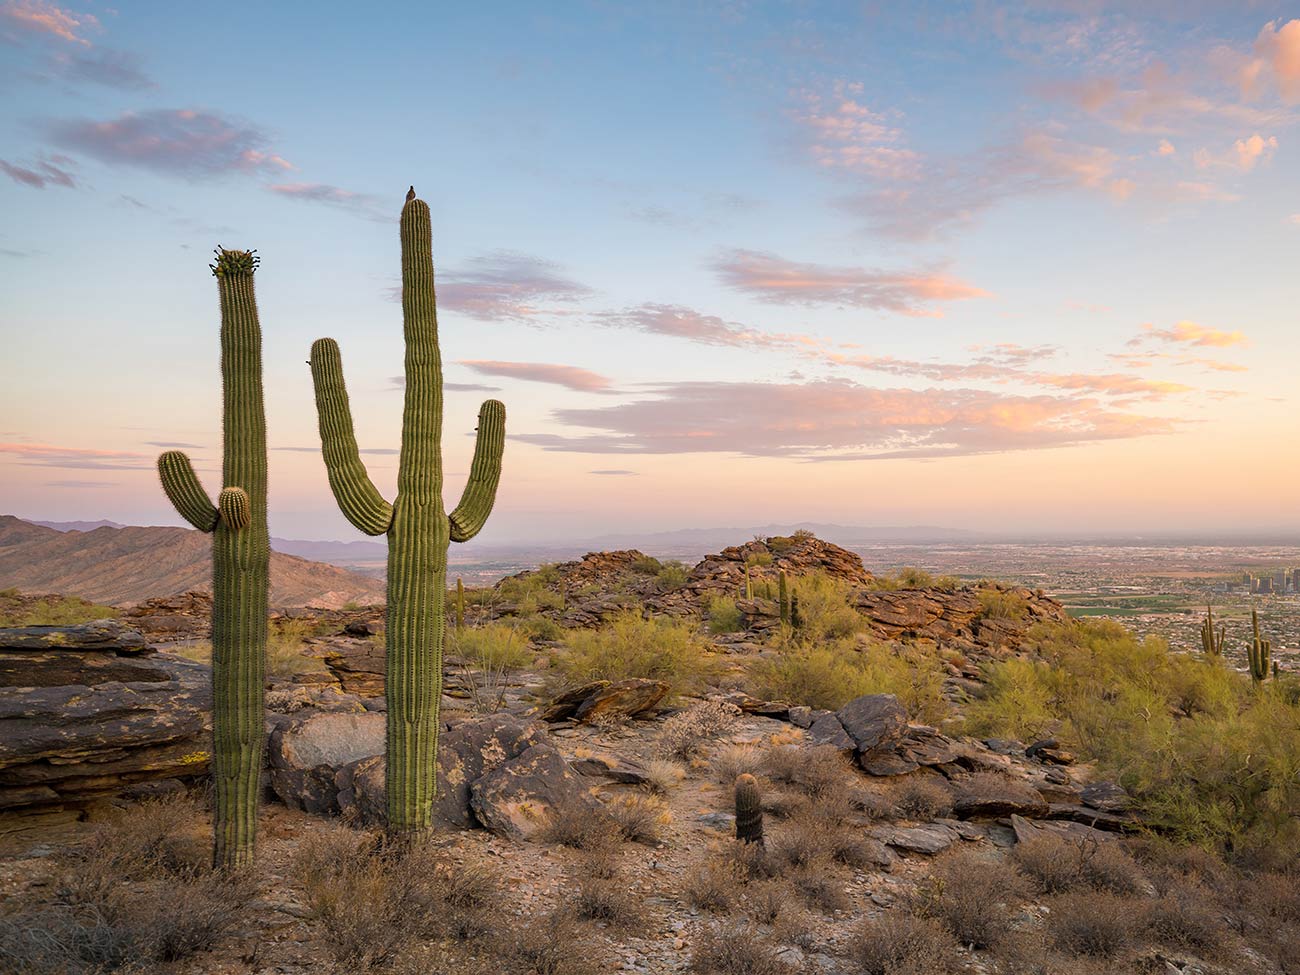 A desert landscape near Phoenix